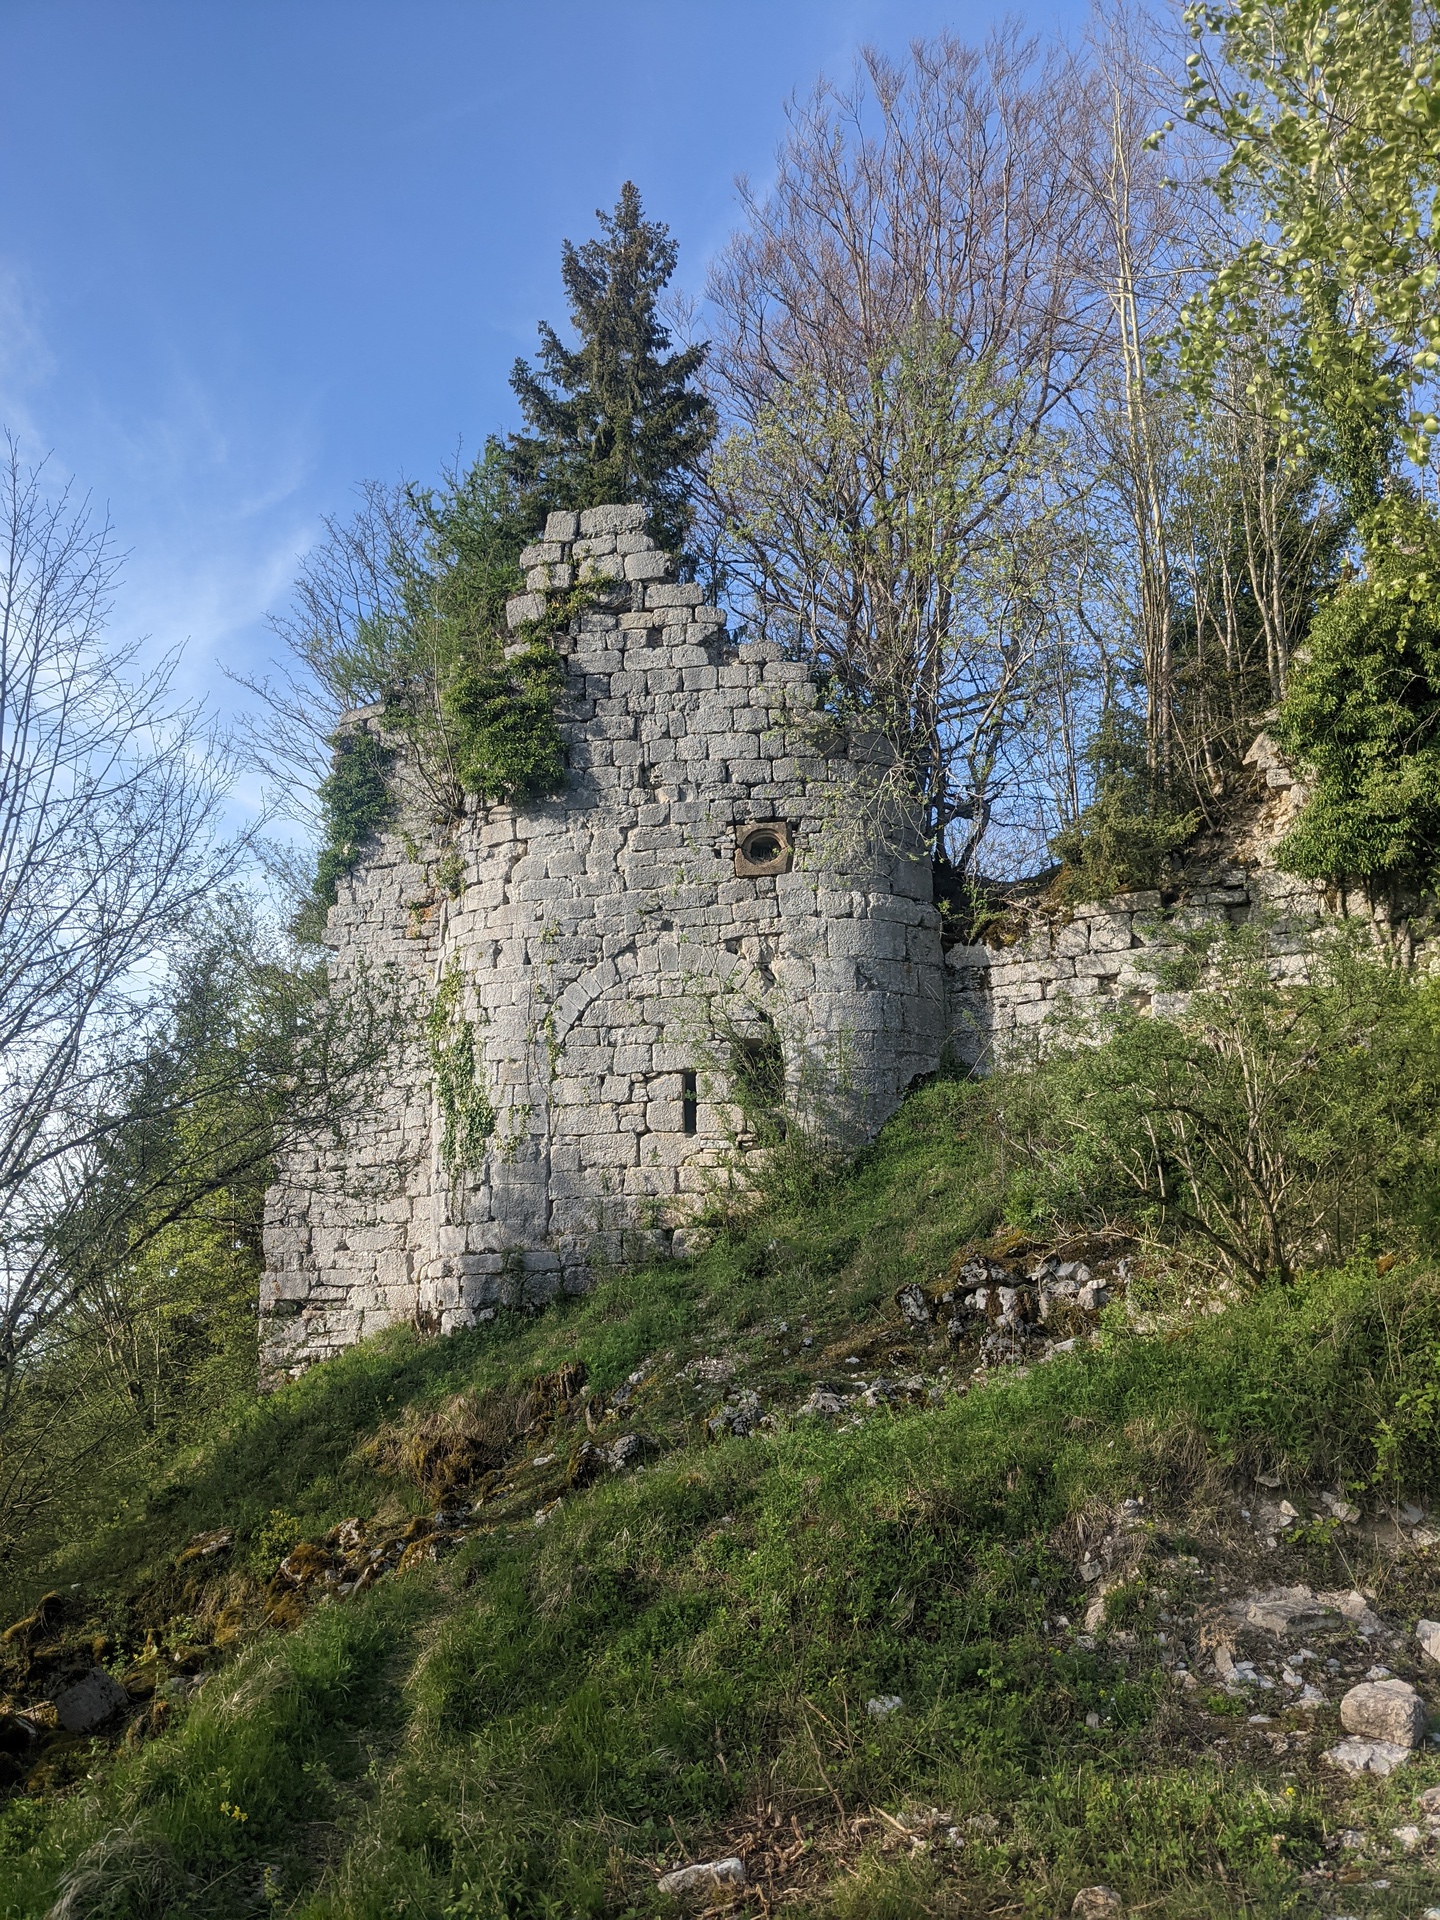 Un morceau de mur en ruine d'un chateau entourée d*arbres et d'herbe